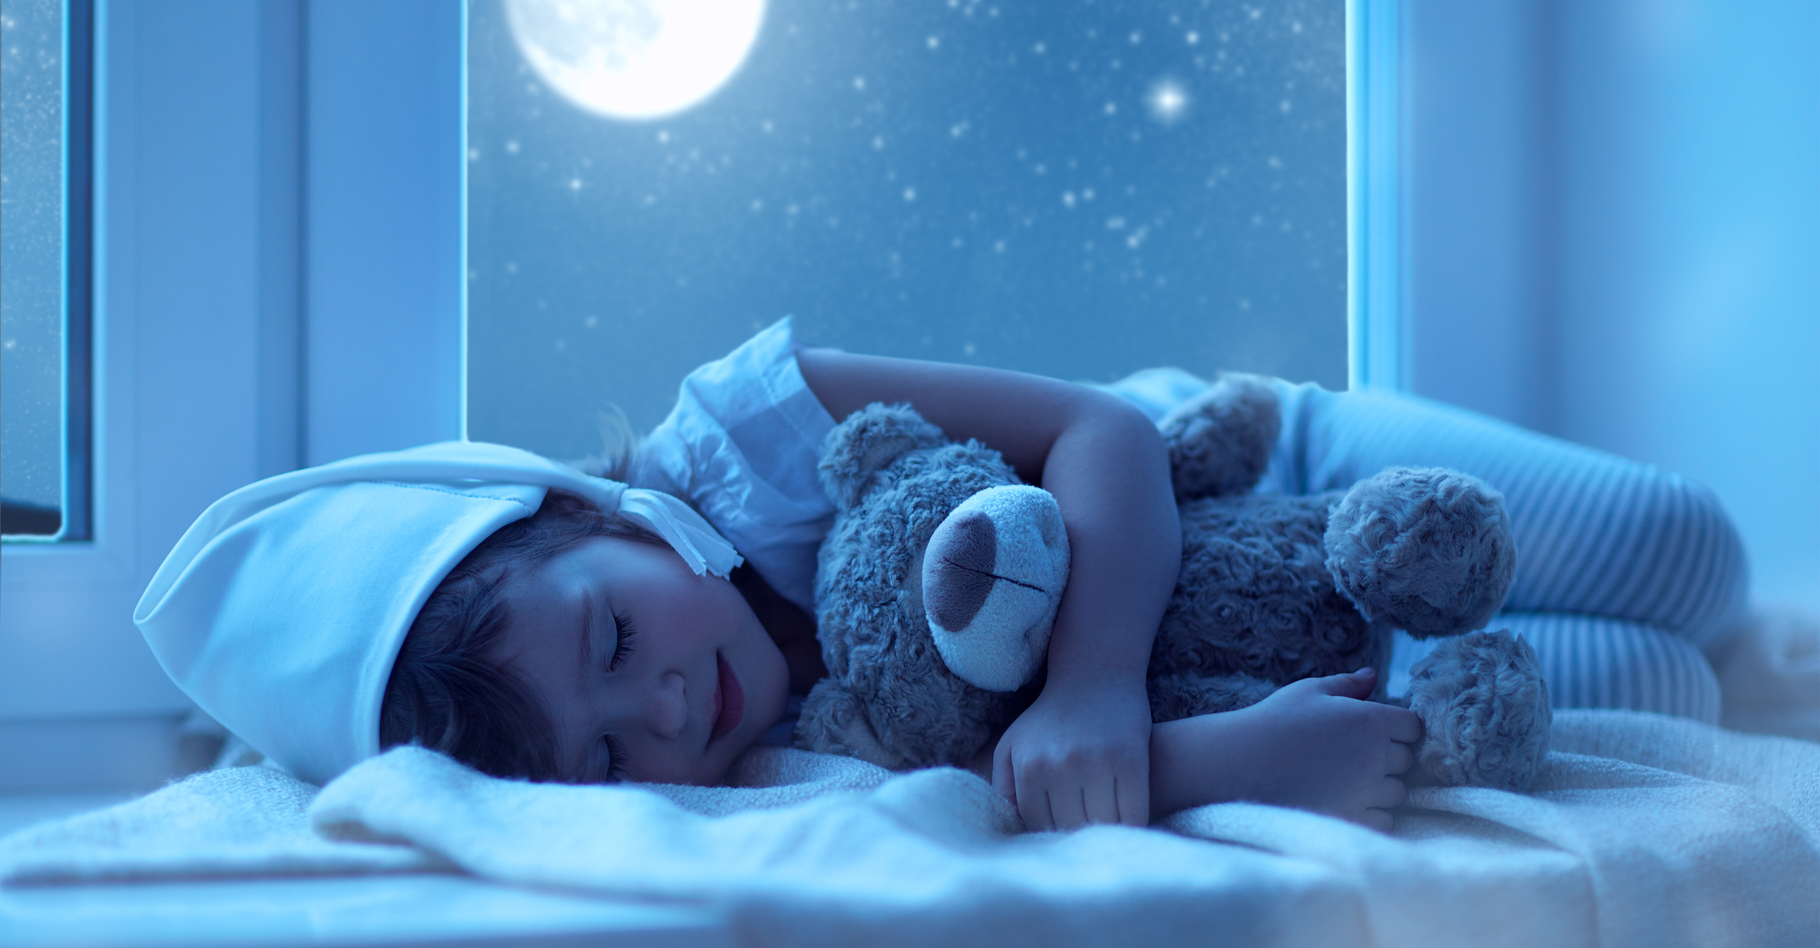 Le sommeil est un facteur clé de la santé et du bien-être, y compris chez les enfants. © Evgeny Atamanenko, Shutterstock